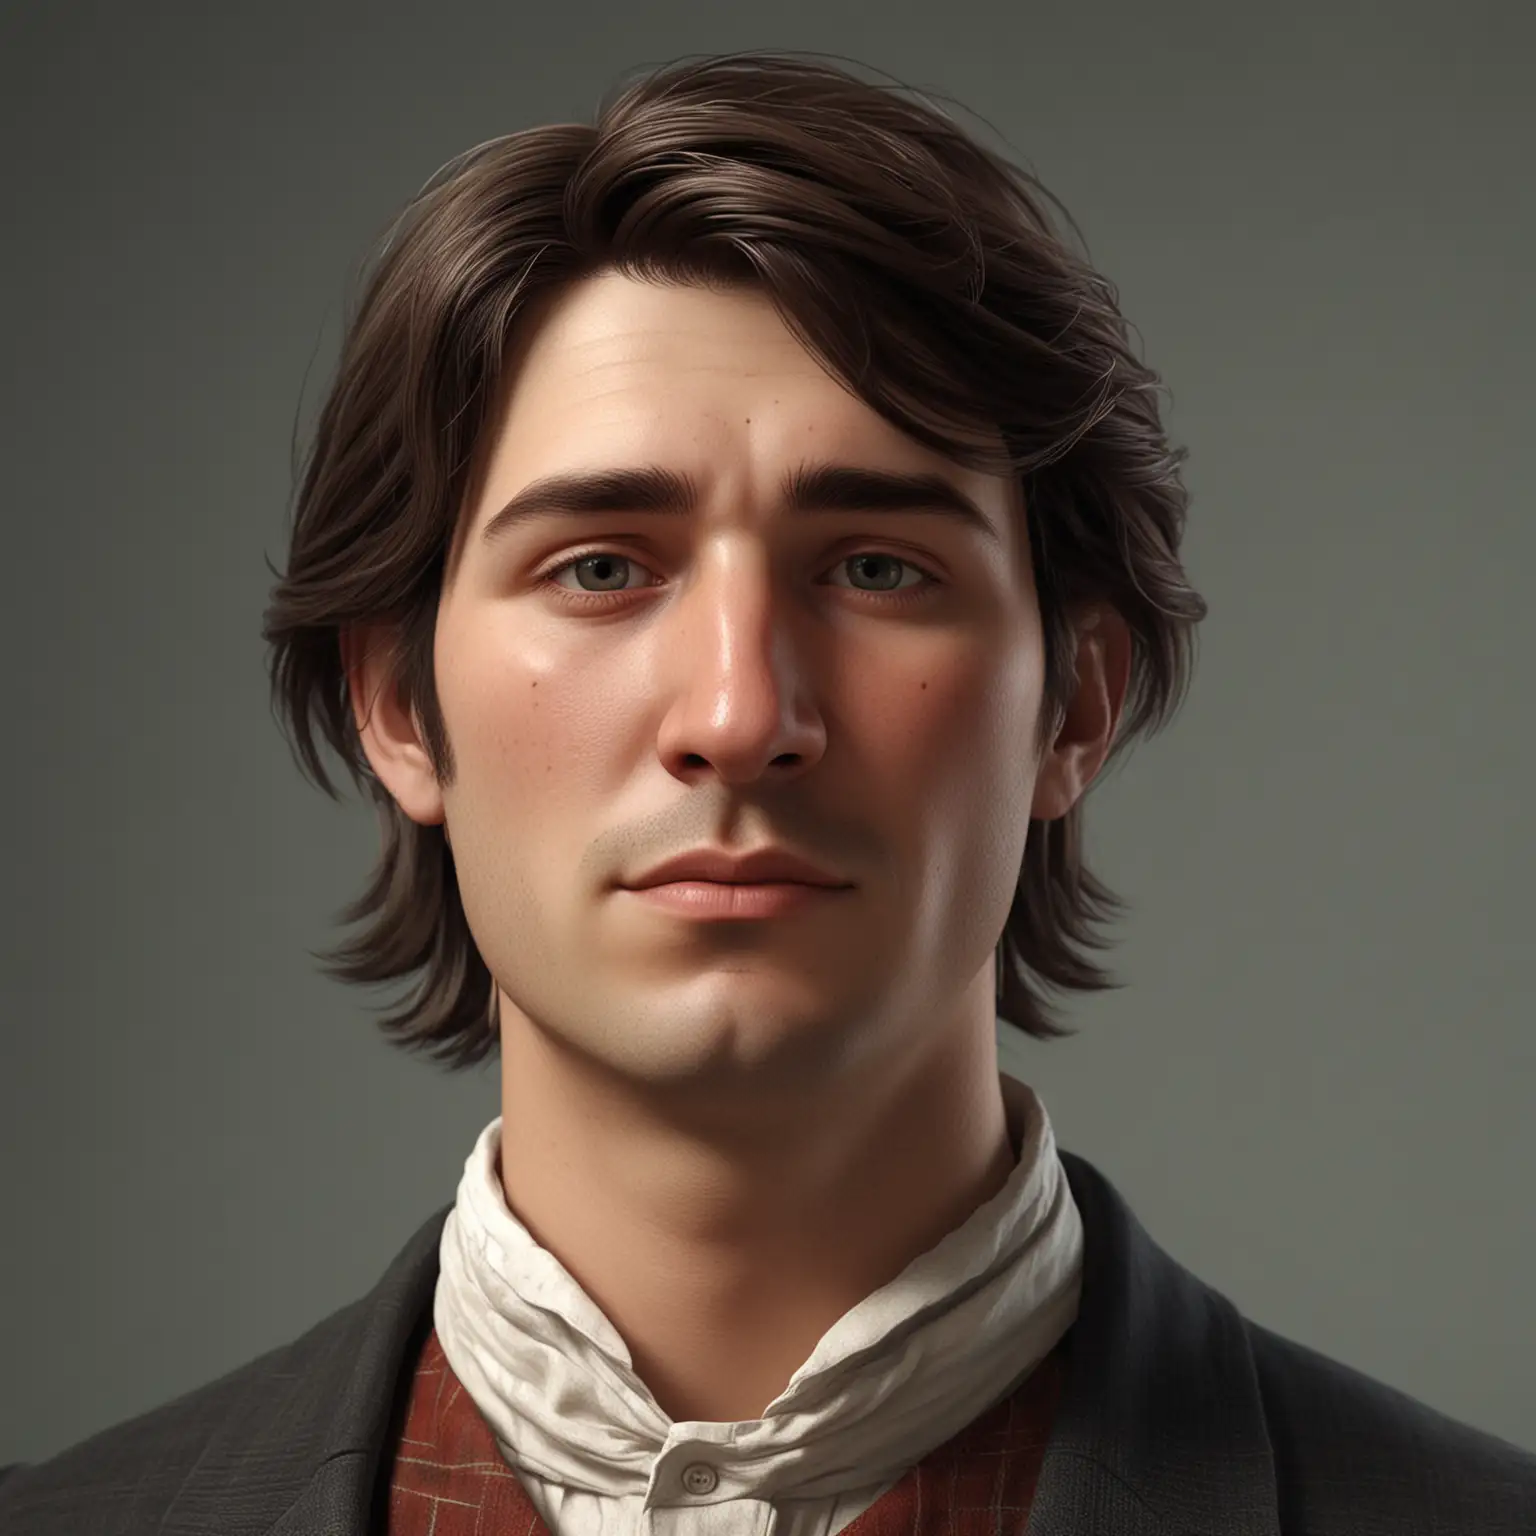 мужчина с пухлыми щеками, длинным носом. у него волосы средней длины, зачесанные в разные стороны. стиль реализм, 3д-анимация. в одежде 19 века